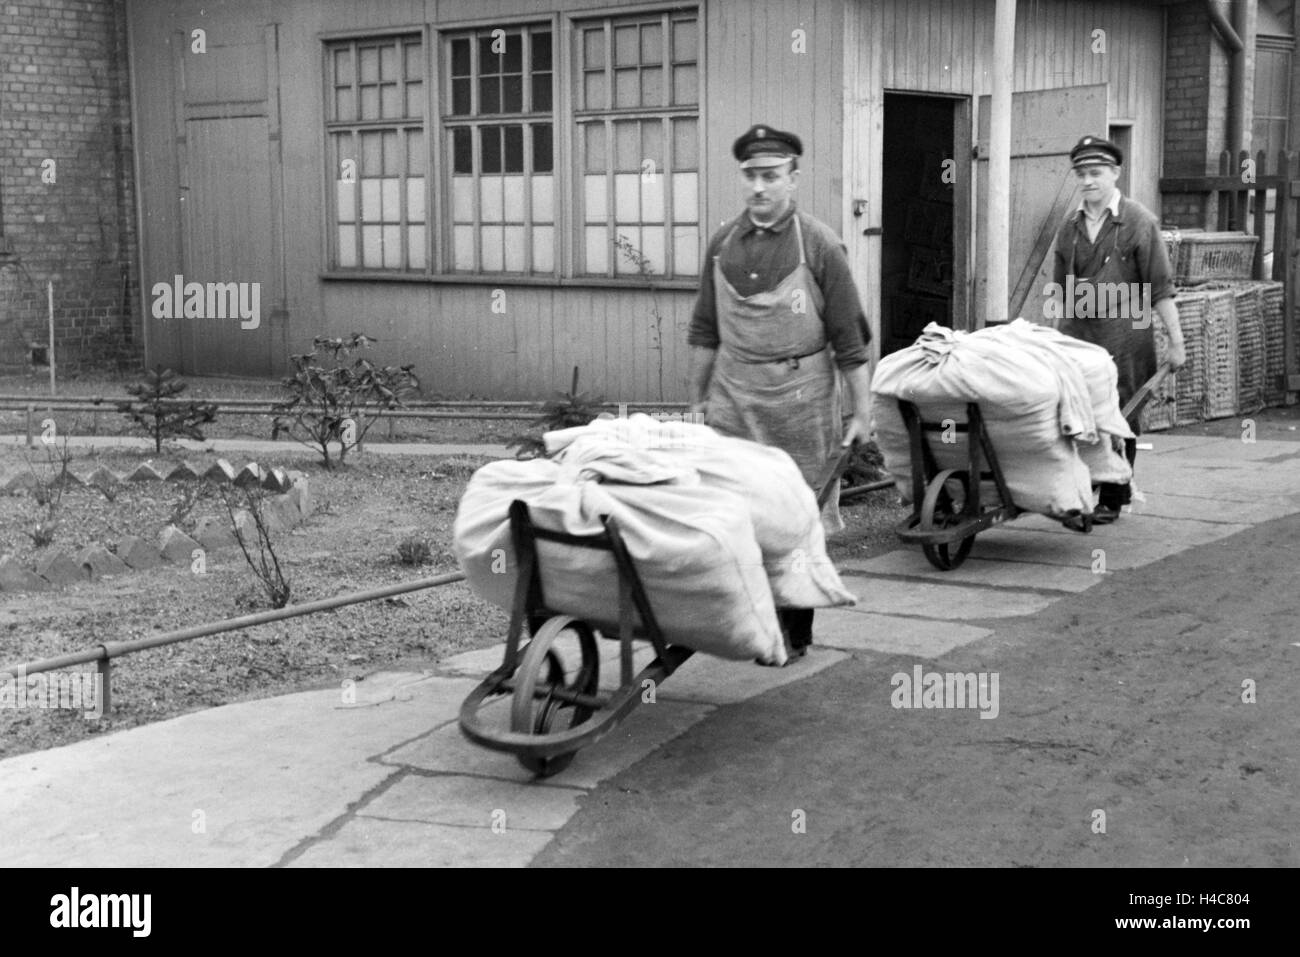 Mitarbeiter der Mitropa beim Verladen von Wäschesäcken, Deutschland 1930er Jahre. Mitropa staff members loading sacks of laundry, Germany 1930s Stock Photo